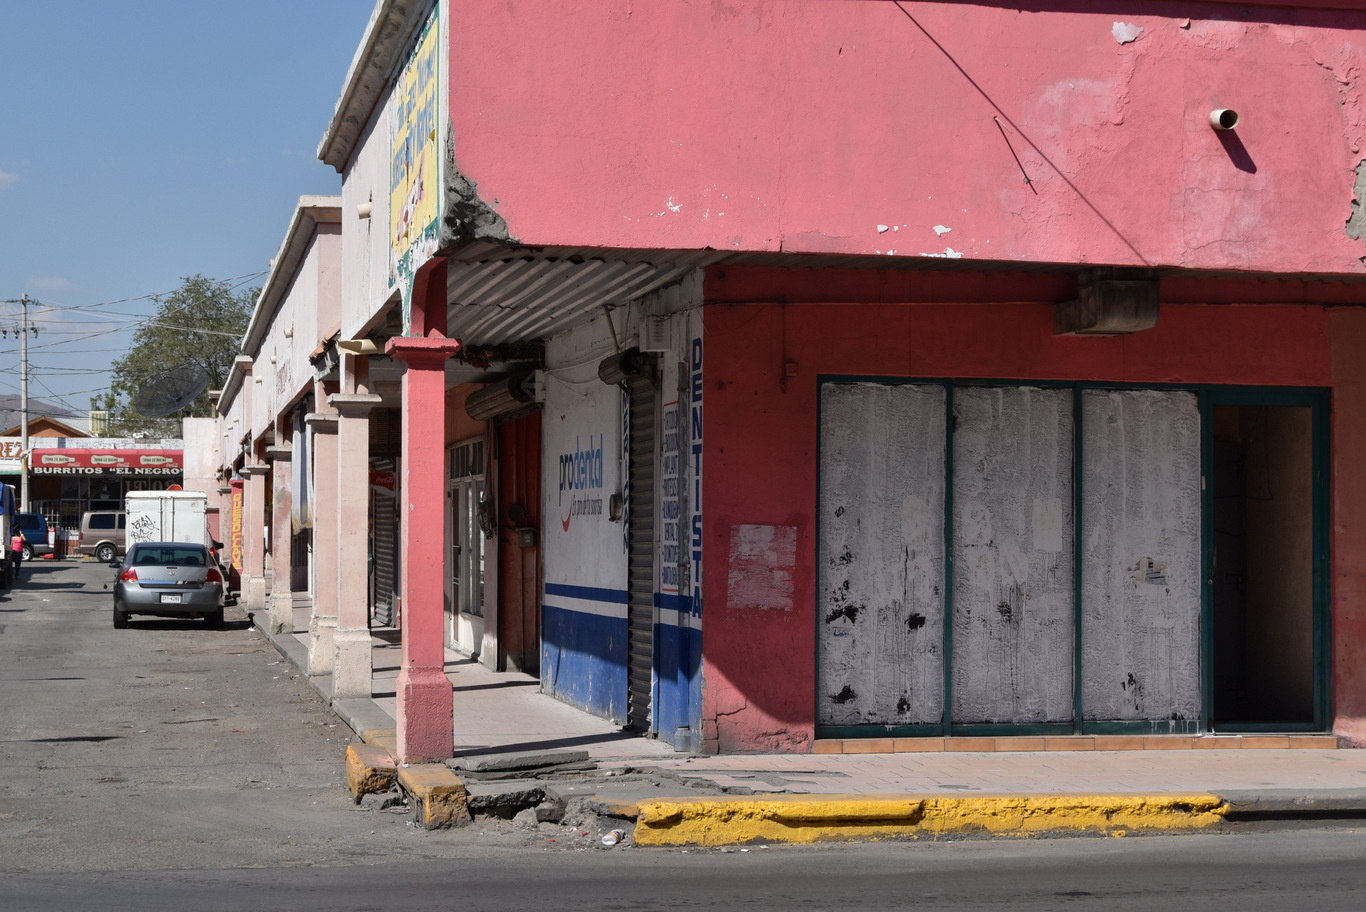 US15 0926 042 Ciudad Juarez, Mexico